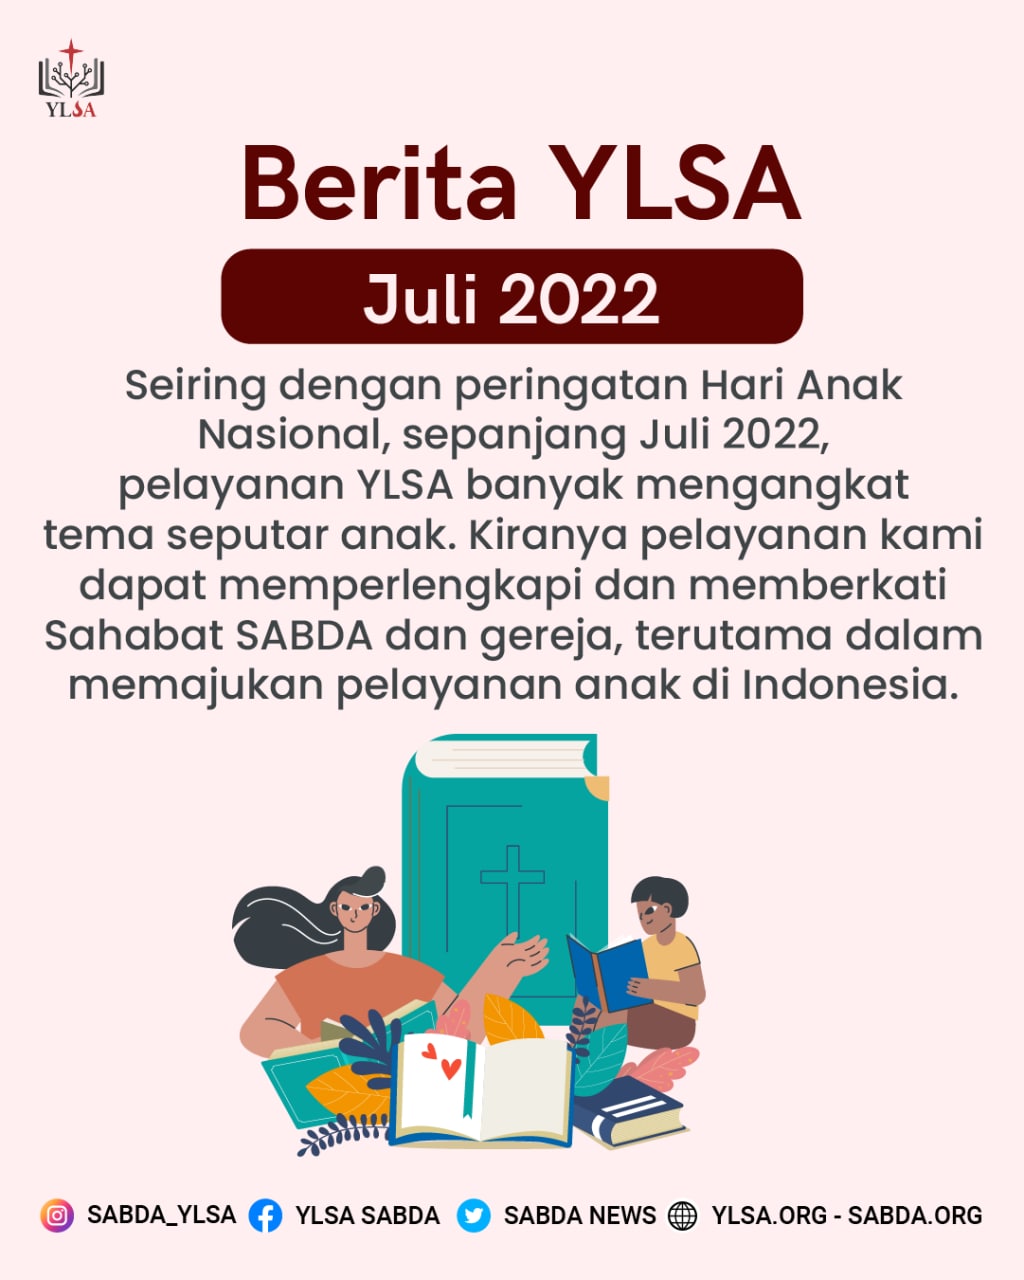 Sepanjang Juli 2022, pelayanan YLSA banyak mengangkat tema seputar anak.